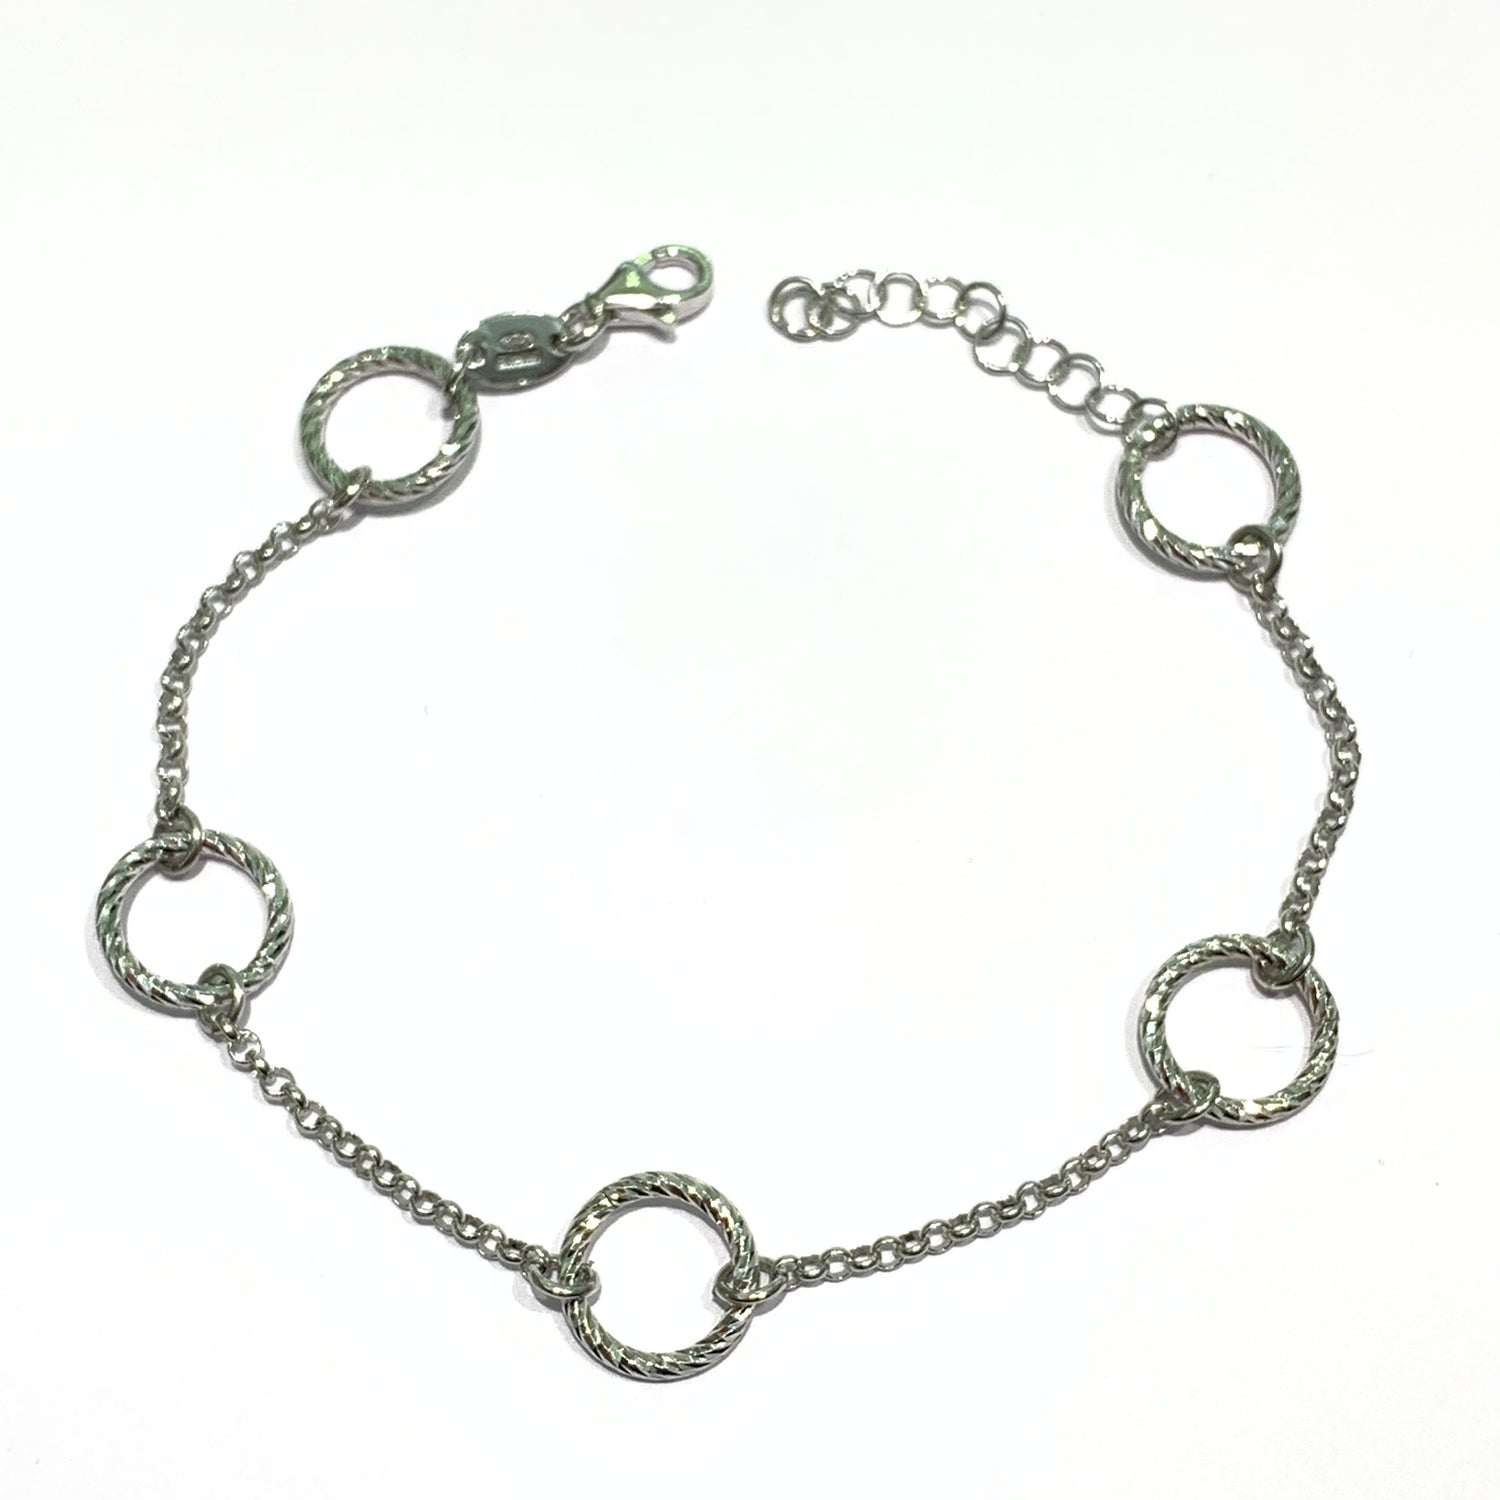 Bracciale in argento con cinque anelli satinati.  Lunghezza 17,5 cm regolabile fino a 20,5 cm.  Larghezza anelli 1 cm.